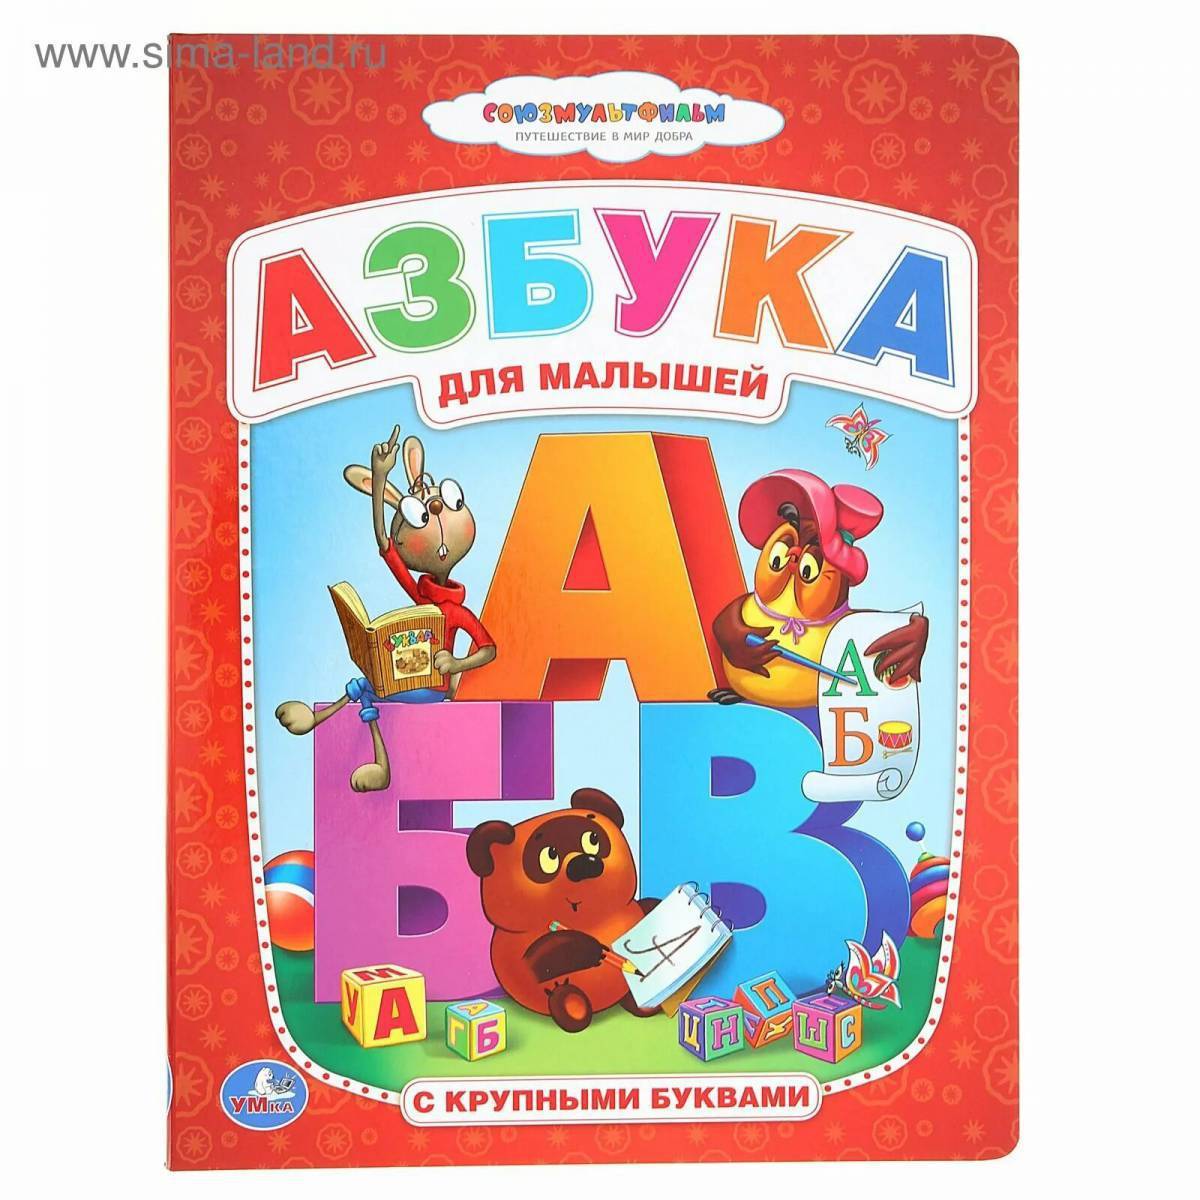 Детские книги азбука. Книжка "Азбука". Азбука для малышей книга. Азбука (обложка). Алфавит книга для детей.